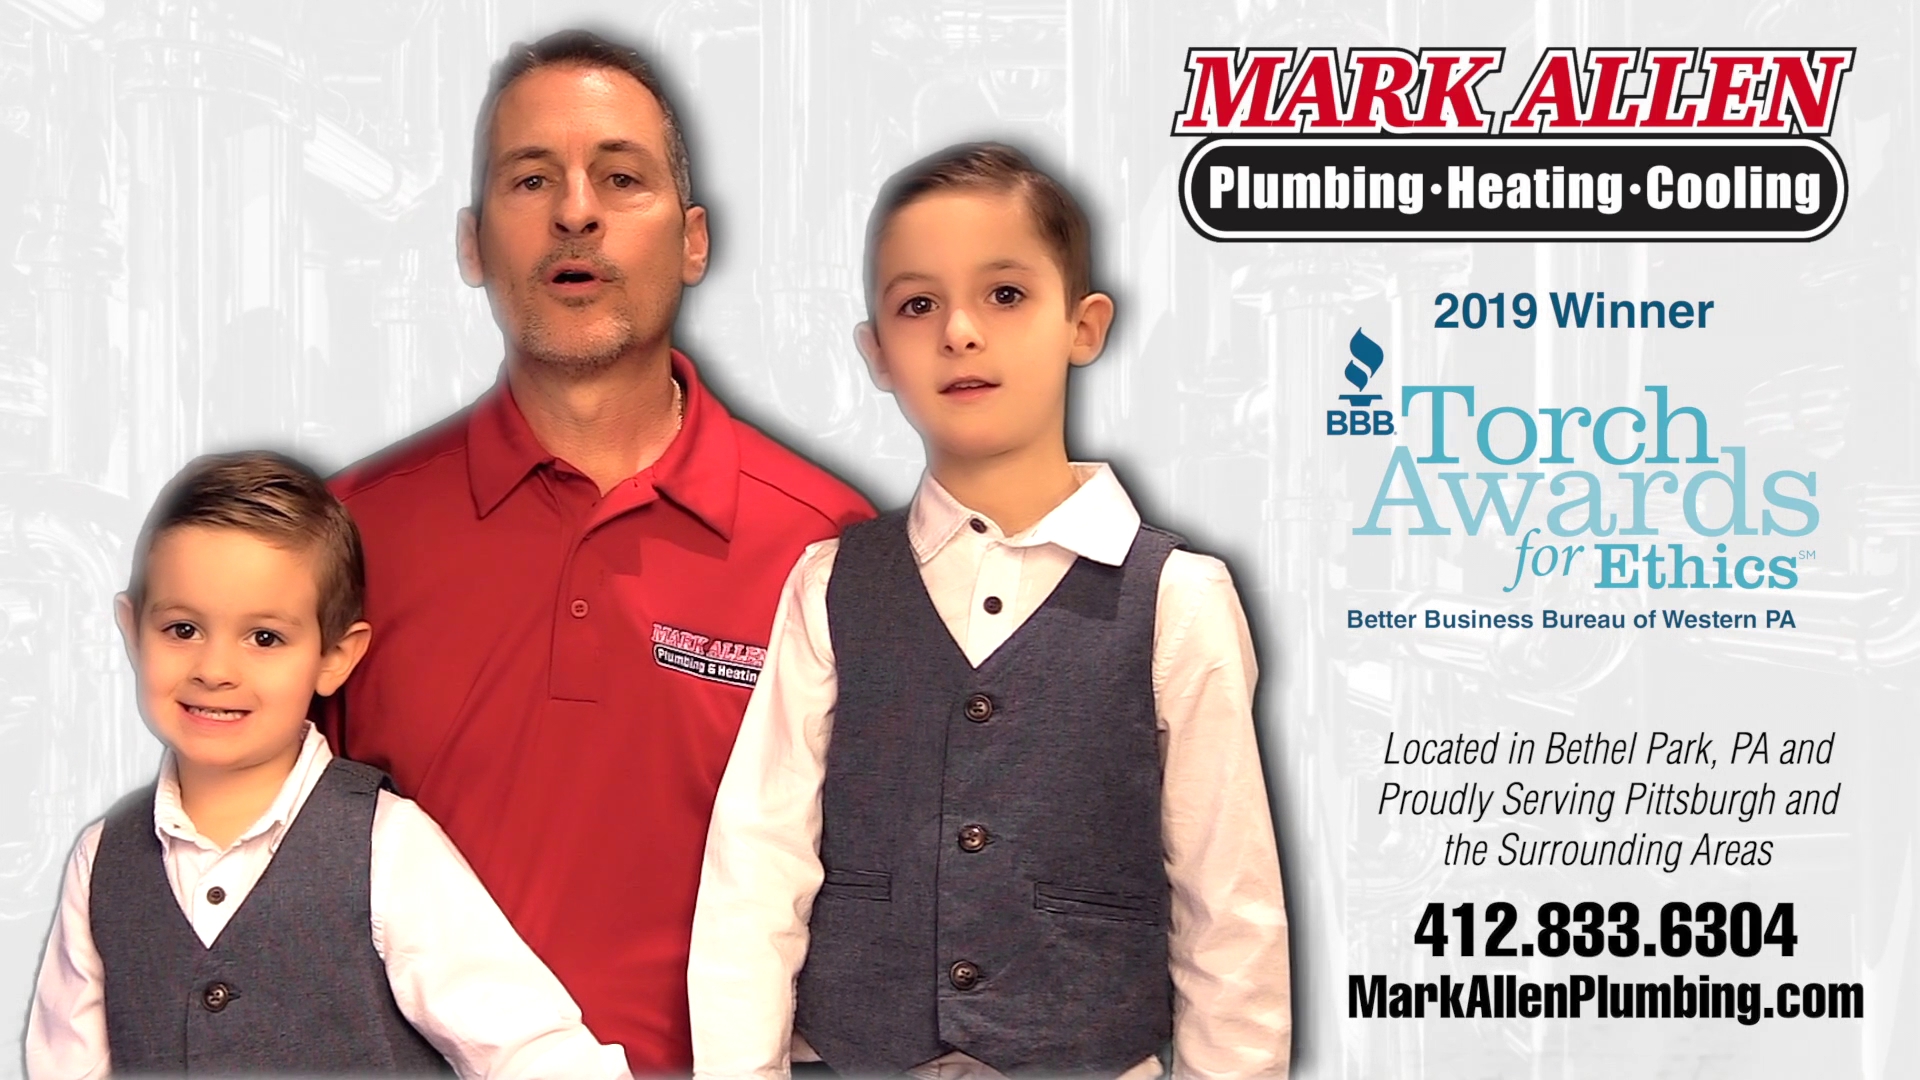 Mark Allen Plumbing, Heating & Cooling